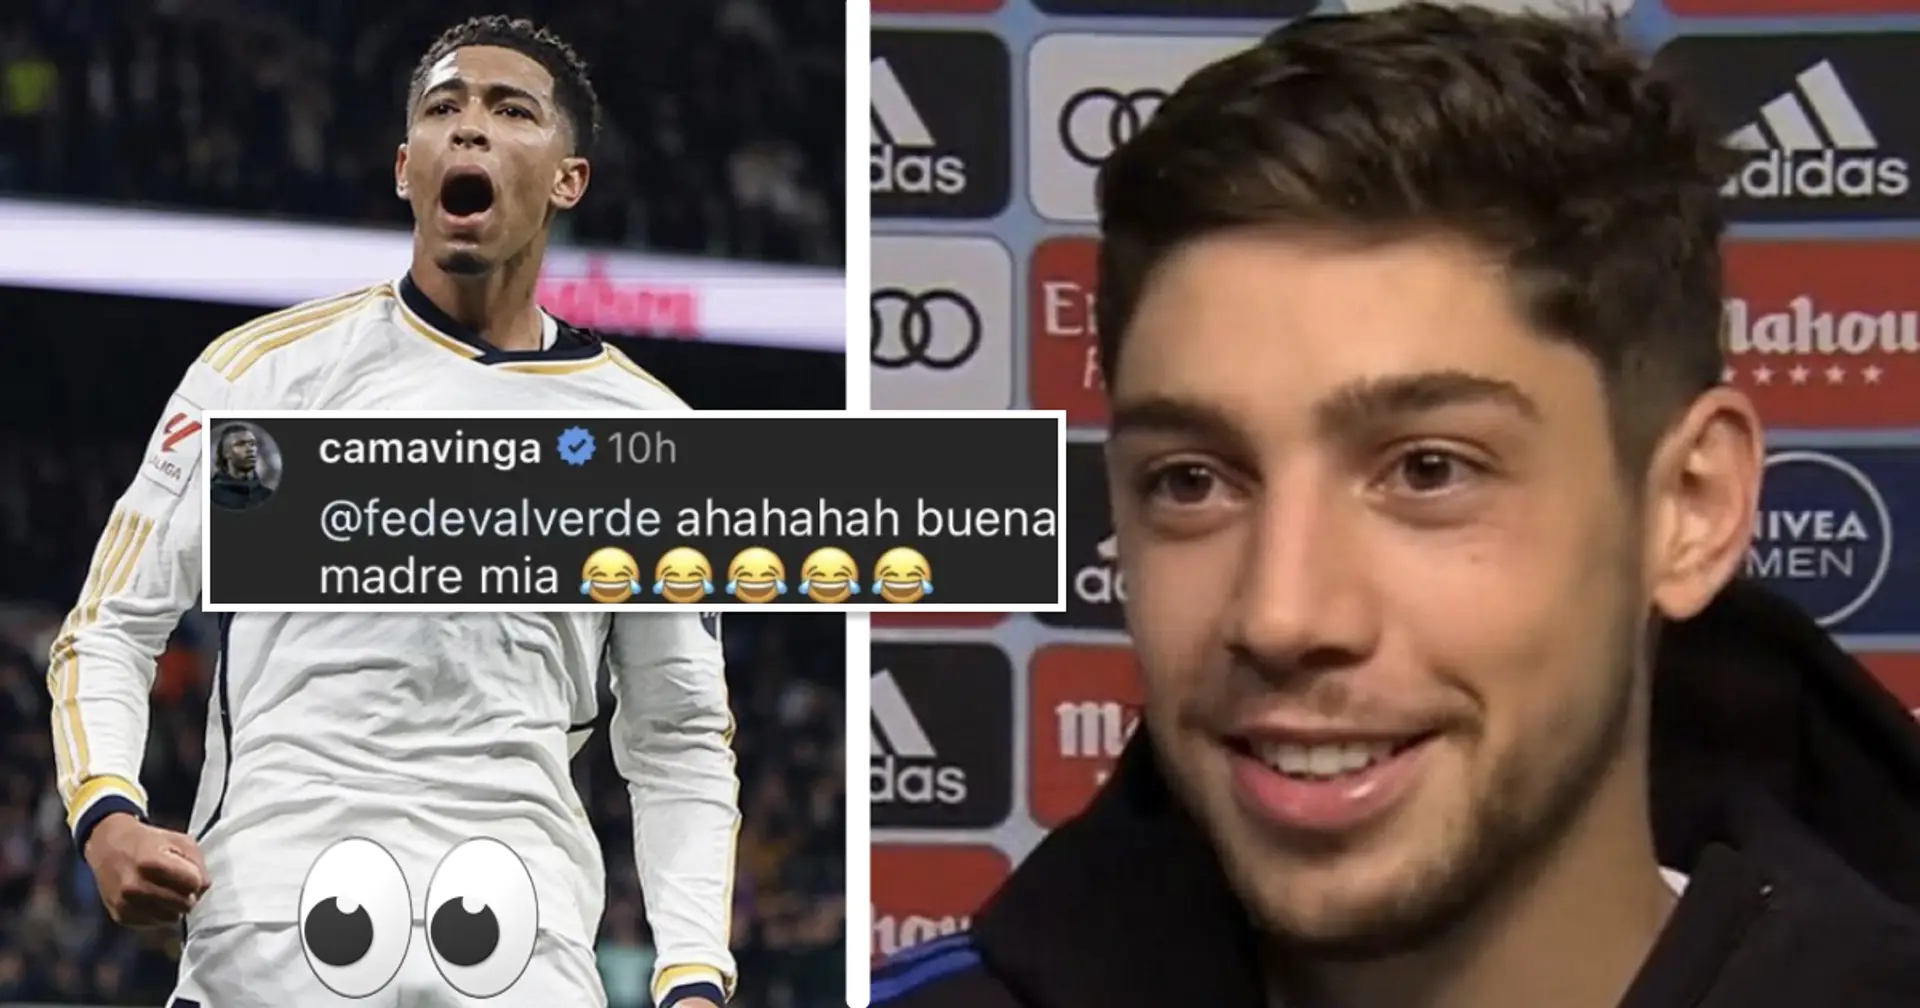 Camavinga réagit à la blague de la "troisième jambe" que Valverde a fait à propos de Bellingham